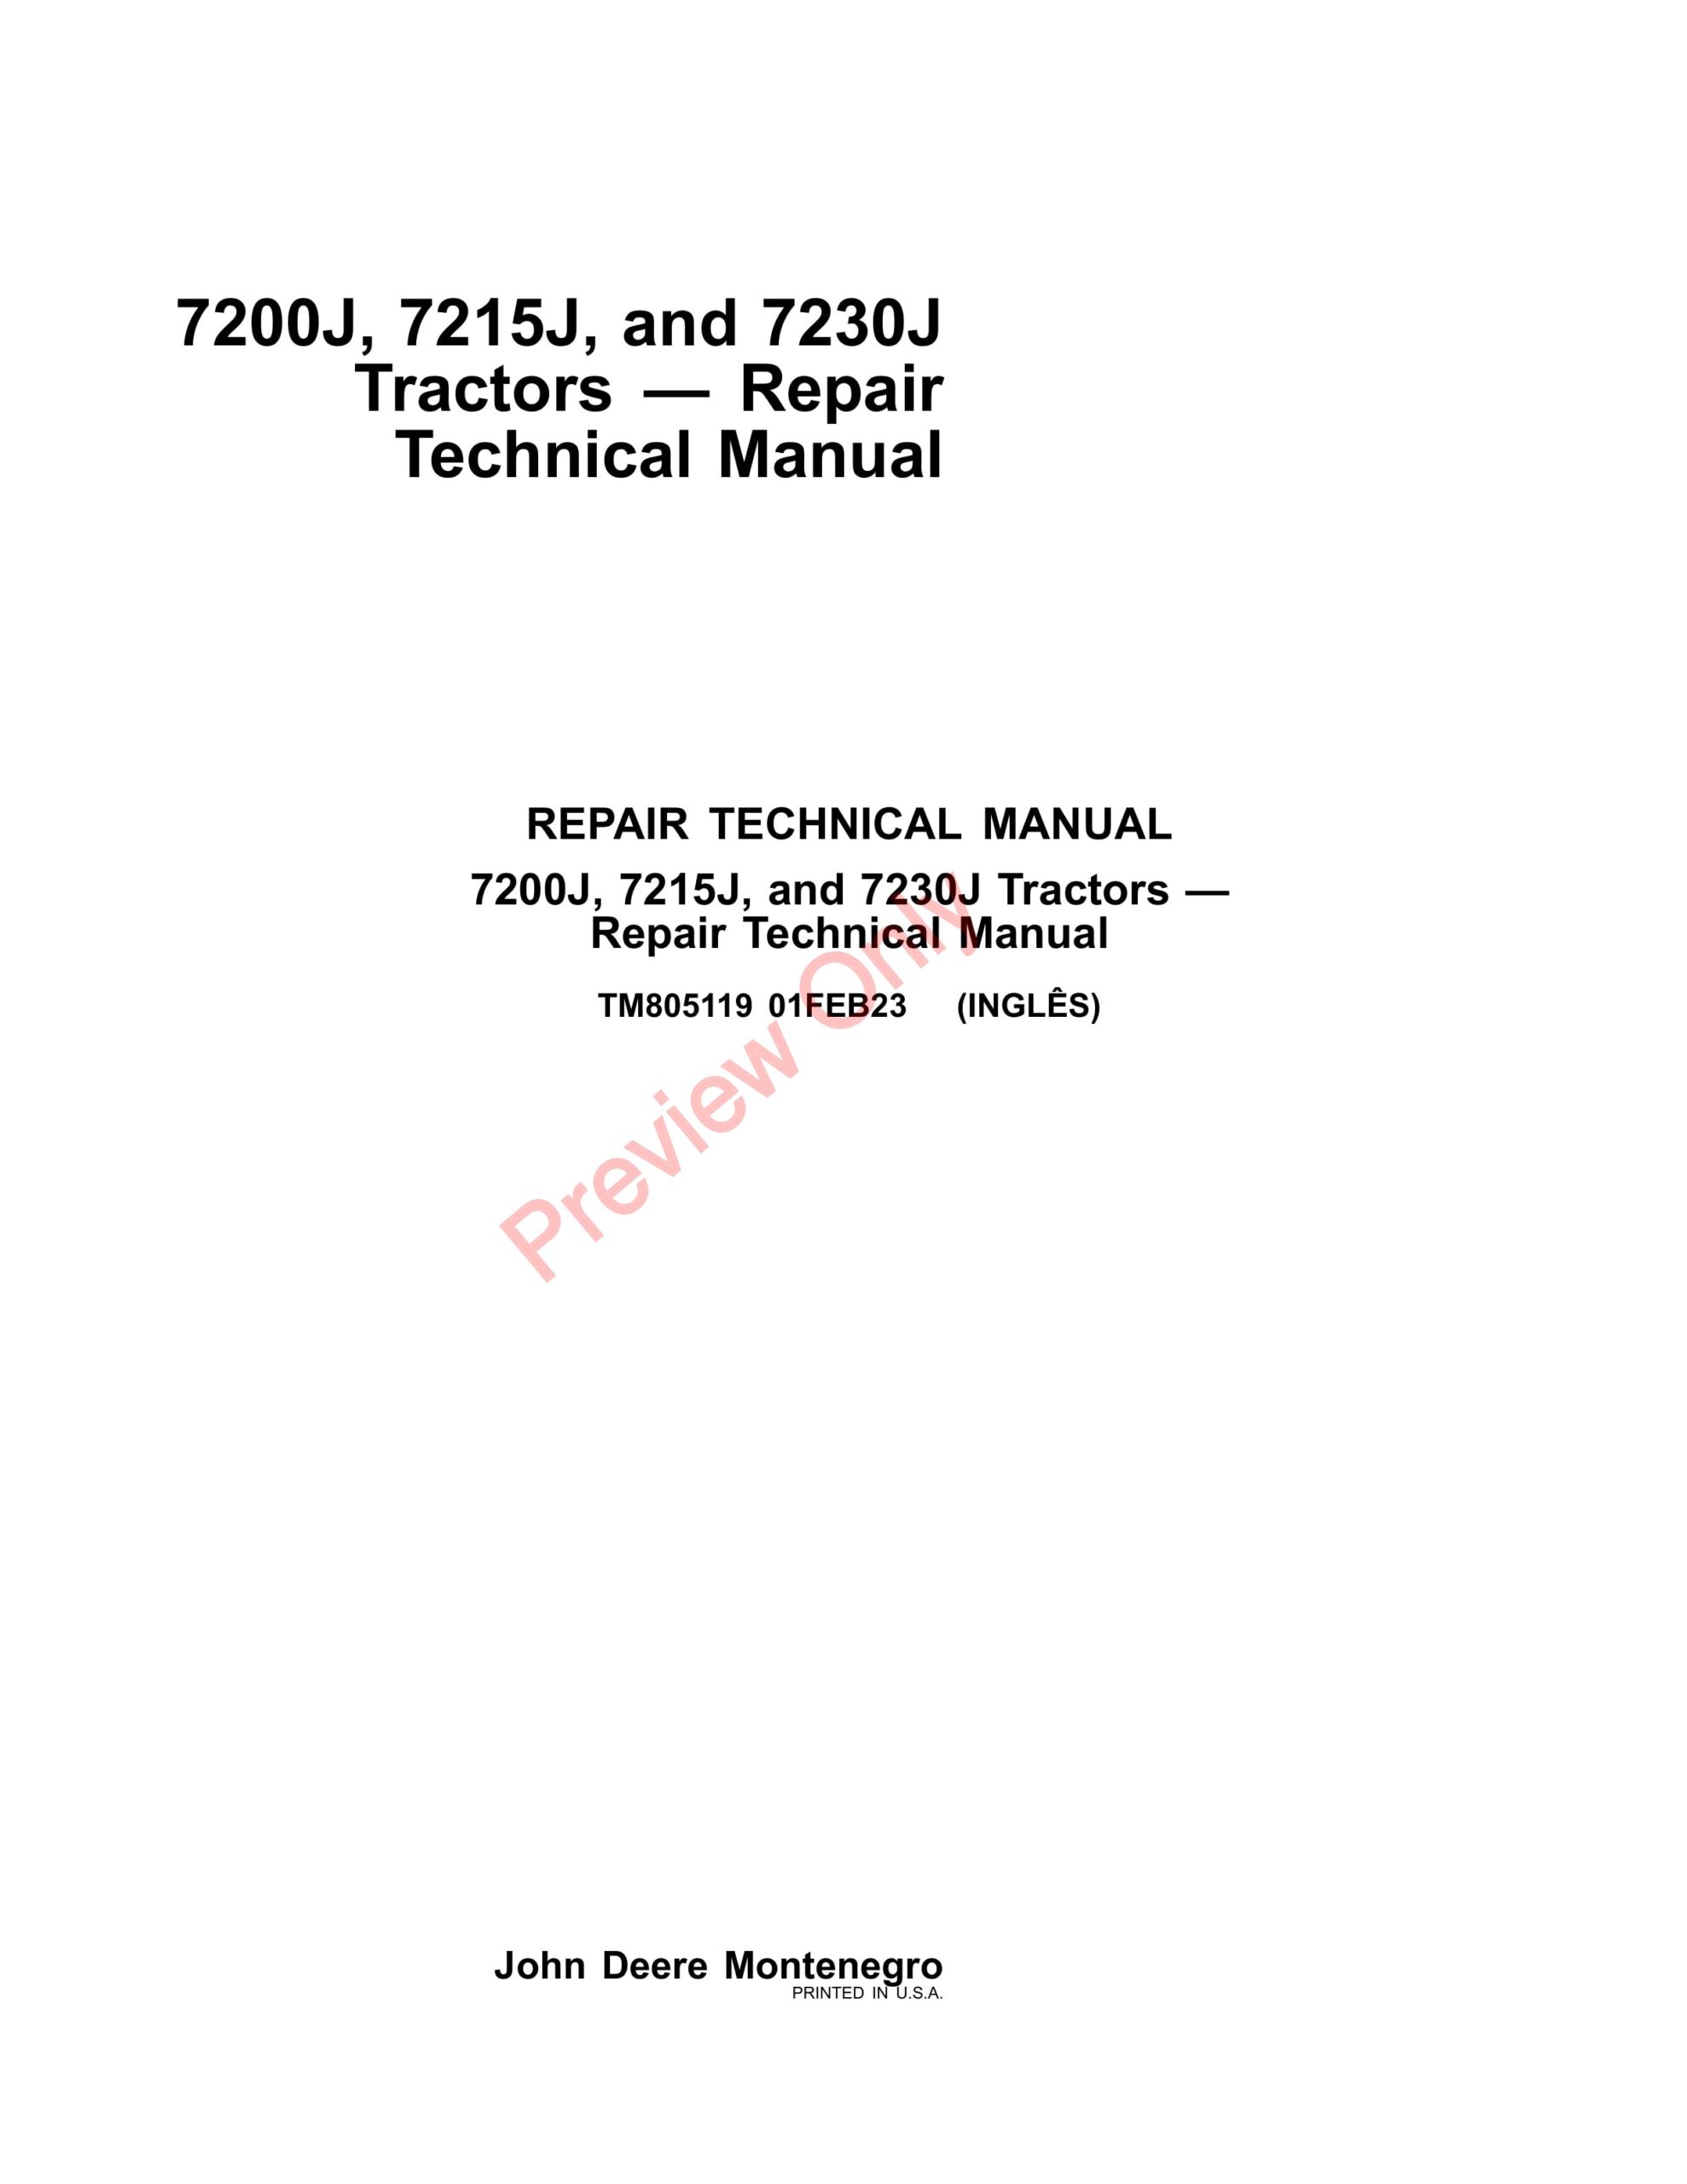 John Deere 7200J, 7215J and 7230J Tractors Repair Technical Manual TM805119 01FEB23-1